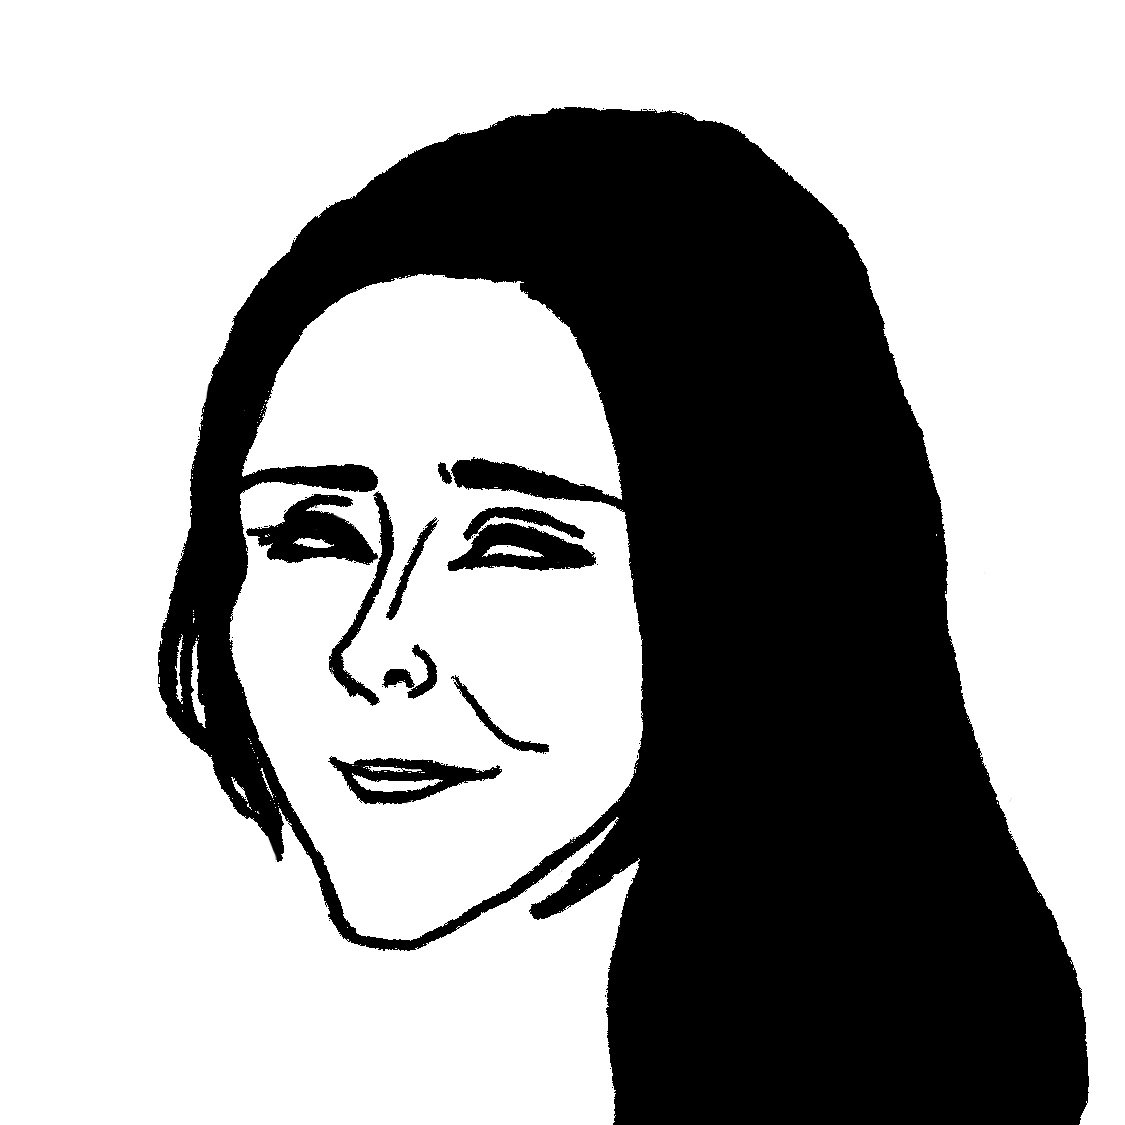 似顔絵を描き始めて間もない頃に描いたサラ・ジェシカ・パーカーは思い出深いです。ミニマルな表現が好きだと気づいたのもこの頃のような気がします。同時期のPrfmもこのような感じです。あと白目シリーズの先駆けでもあります。そんなわけで前置きが長くなりましたがサラ・ジェシカ・パーカー誕生日お 